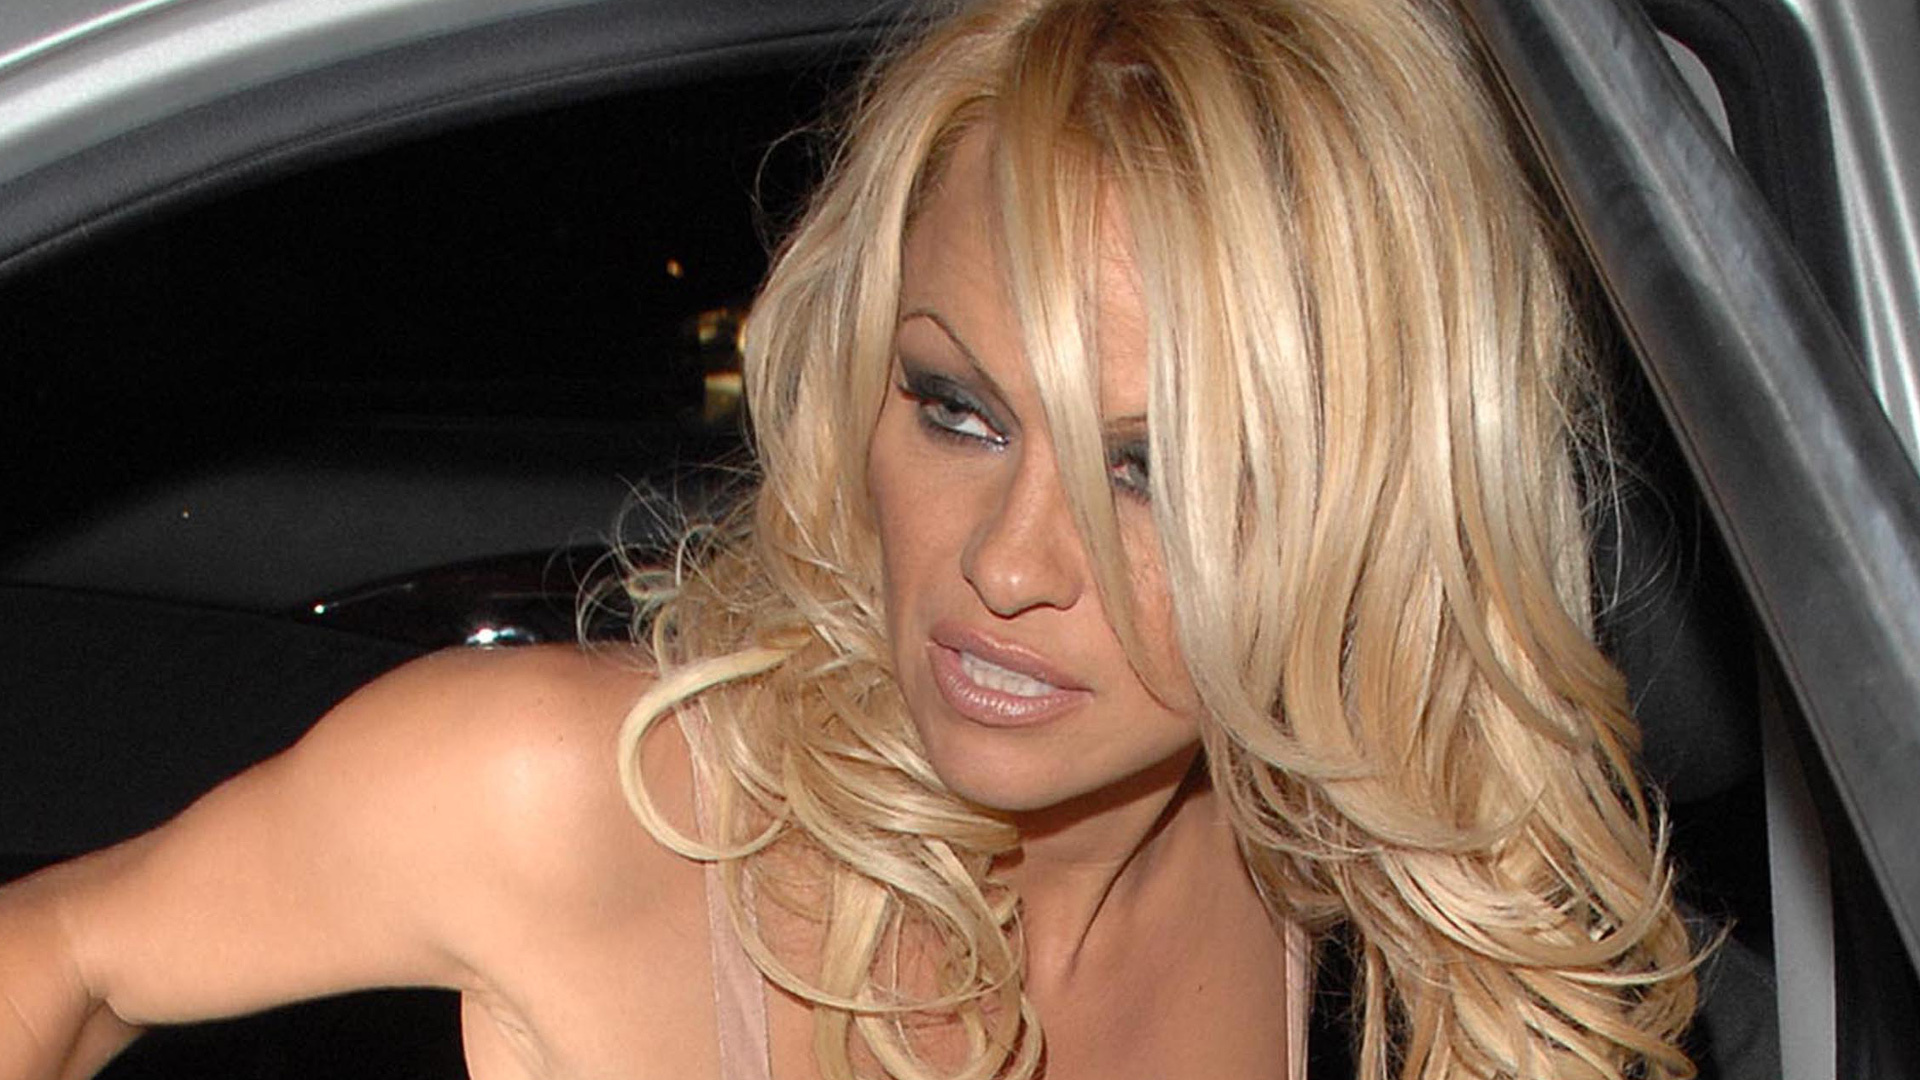 Pamela Anderson el vídeo porno casero fue su mayor pesadilla foto imagen foto